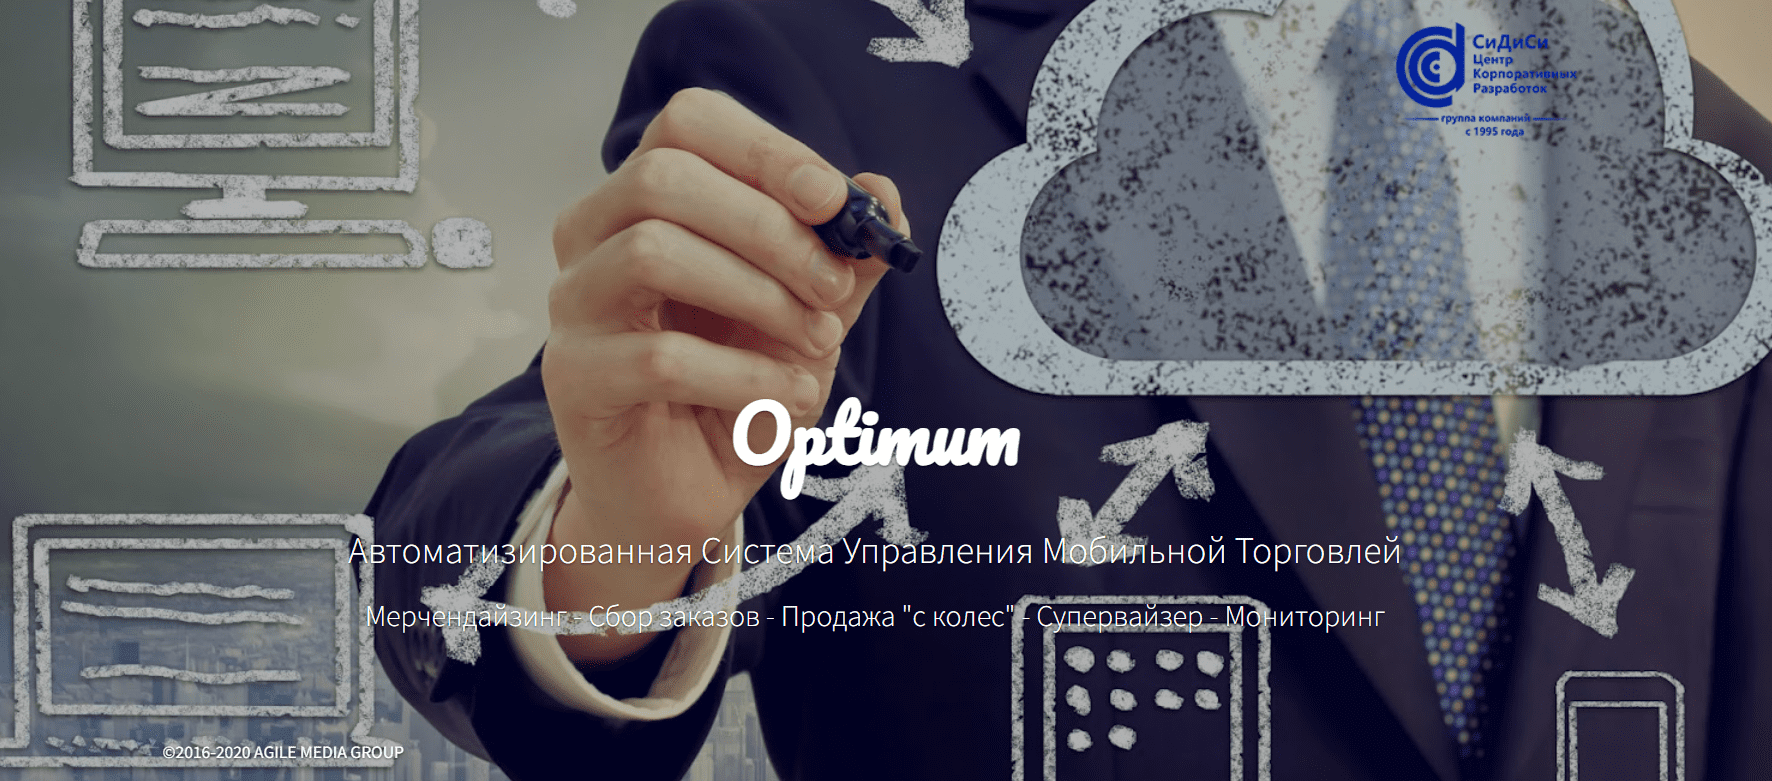 Optimum.uz - официальный сайт